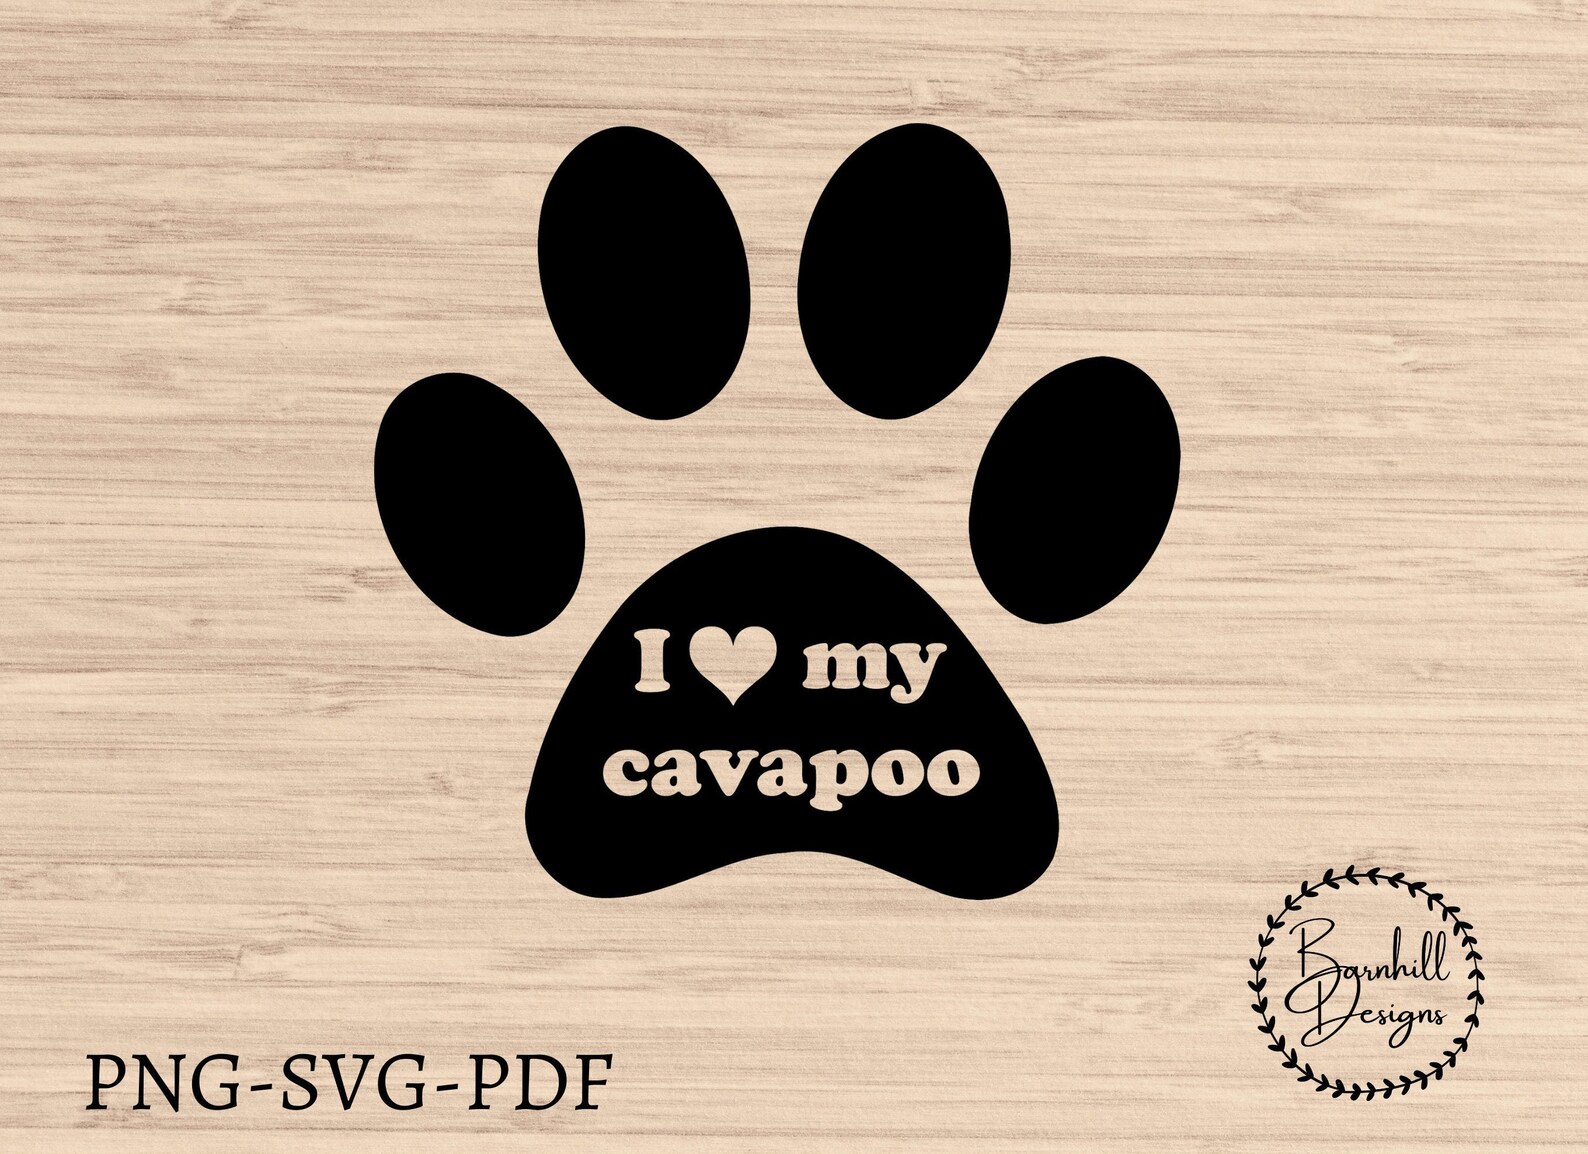 Cavapoo SVG Dog Paw Print Descarga Digital me encanta mi | Etsy